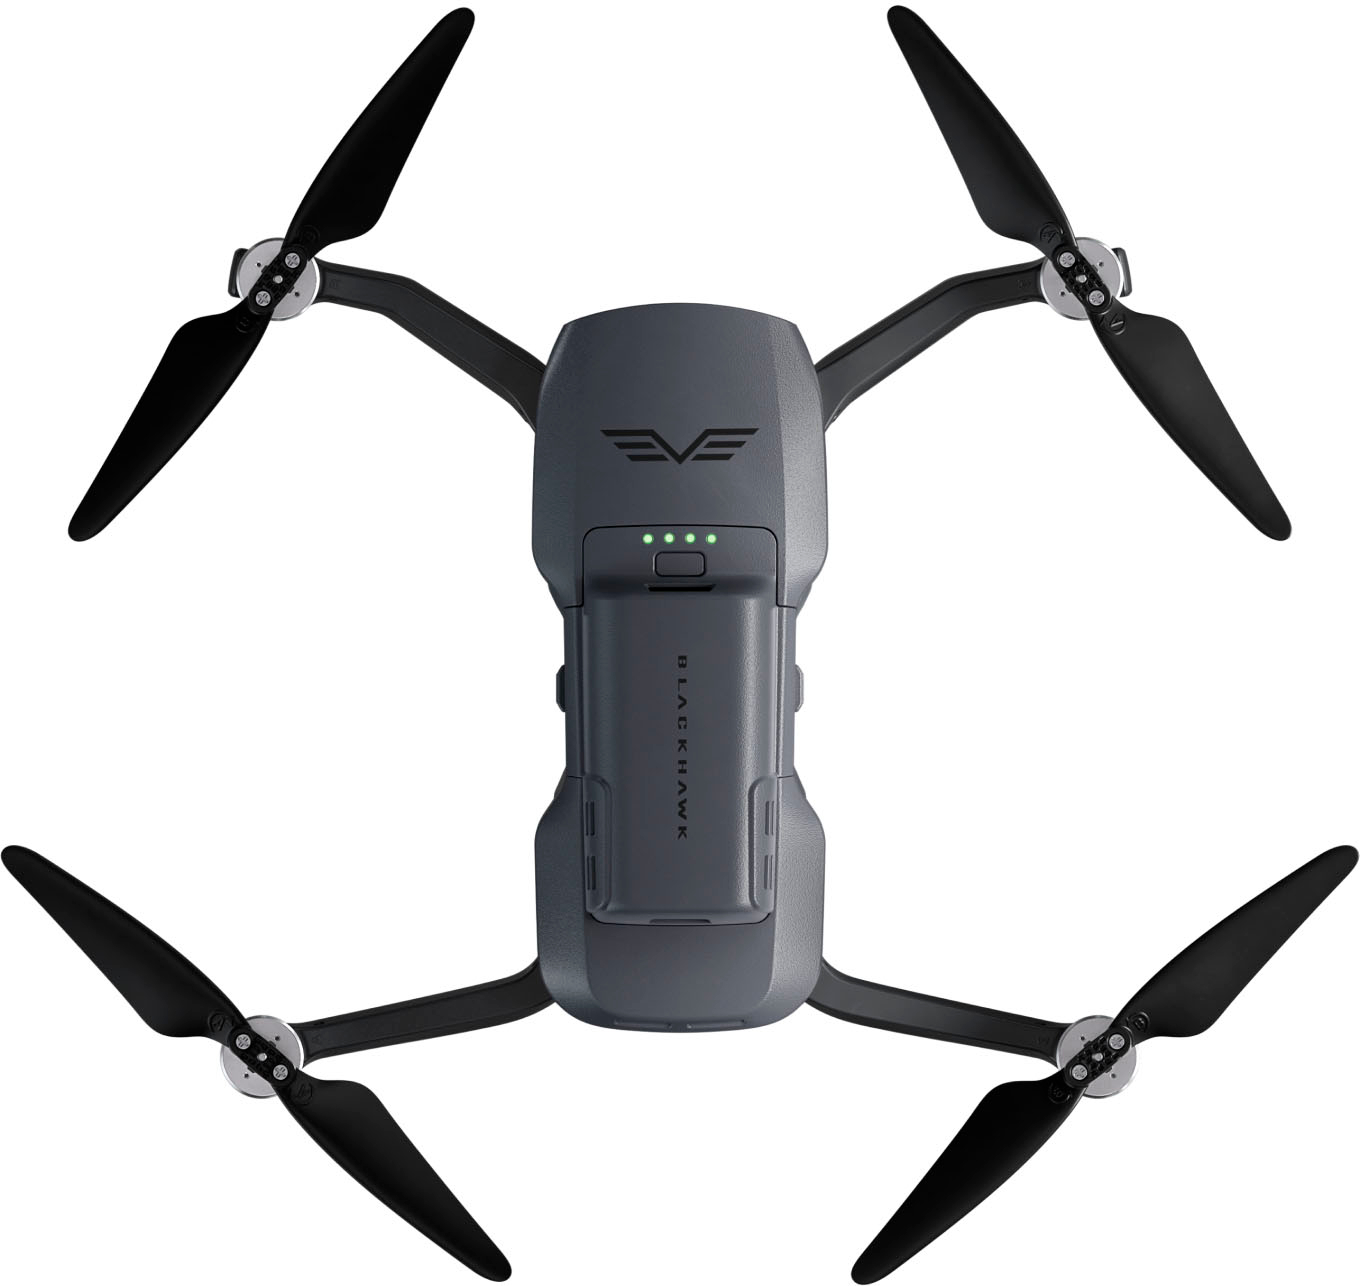 Angle View: DJI - Geek Squad Certified Refurbished Mini 3 Drone - Gray